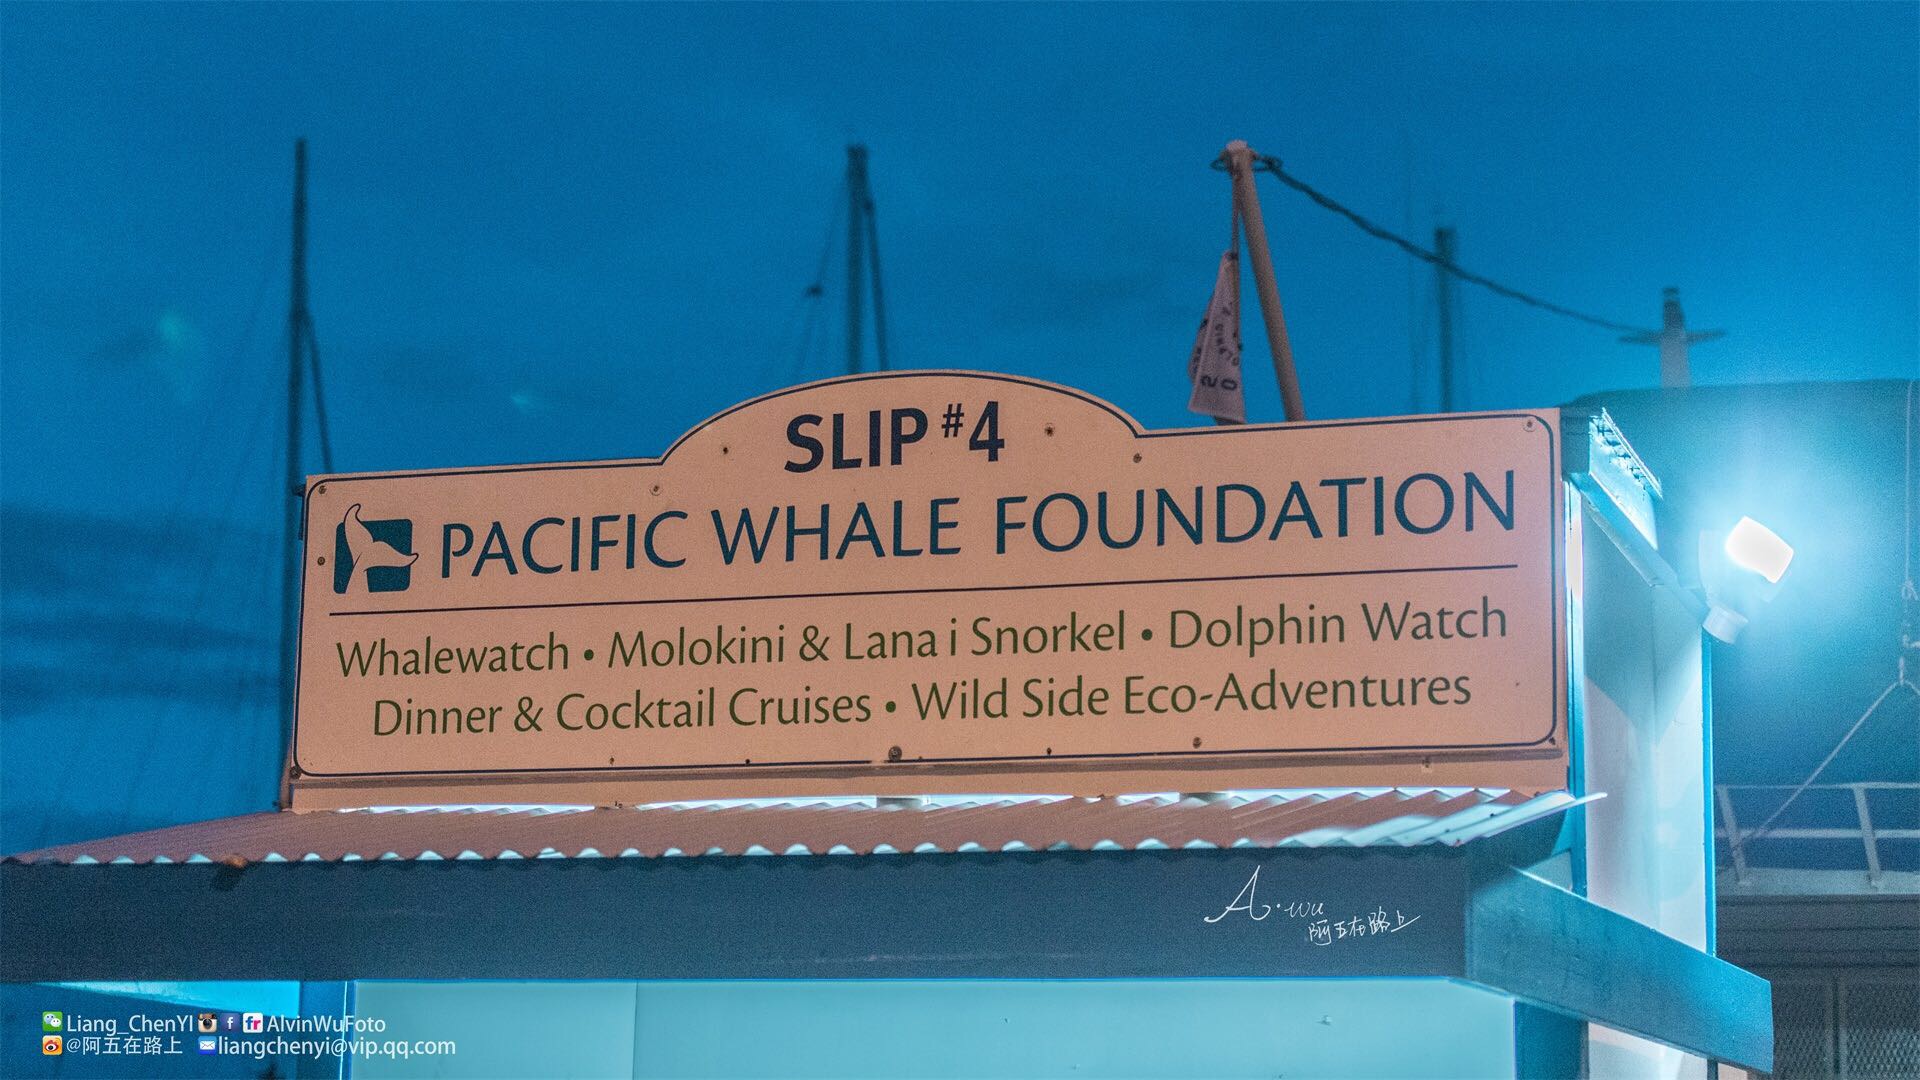 全夏威夷公认的最佳观鲸地点